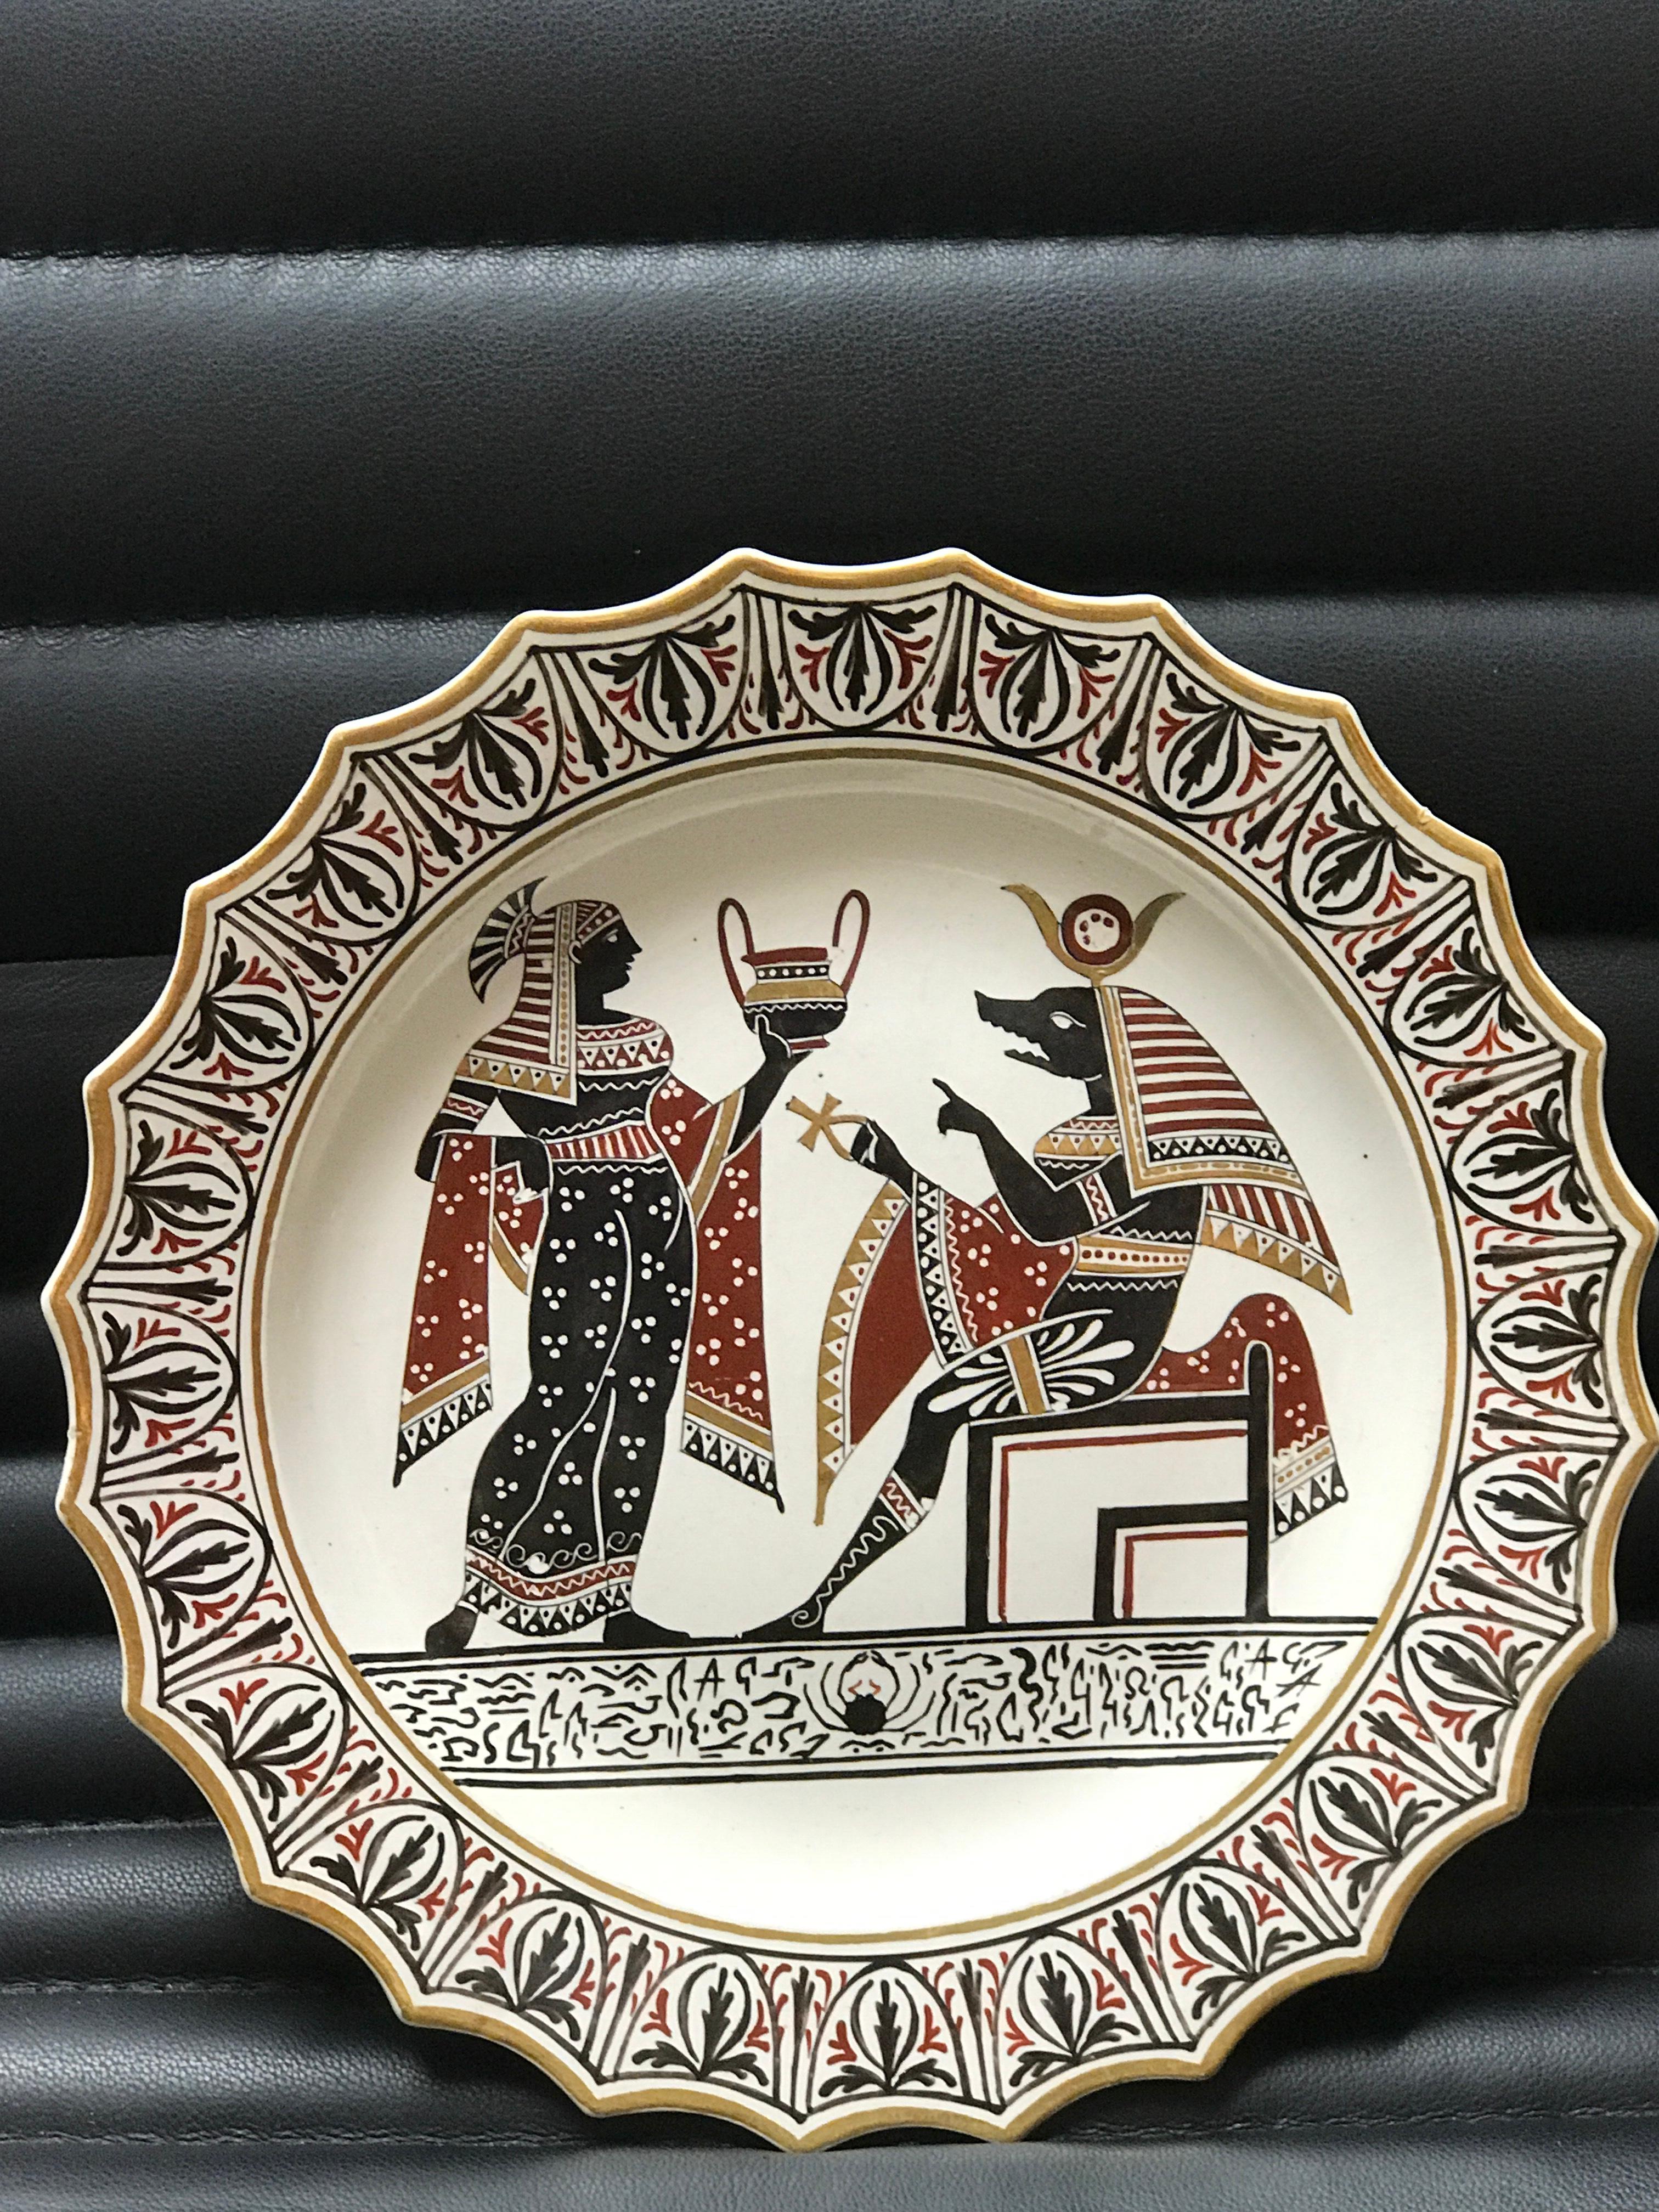 Assiette en poterie Giustiniani Egyptomania avec Anubis et reflets dorés
Fabrication napolitaine (Biagio Giustiniani & Sons) datée de 1830-1840, écriture imprimée Giustiniani et autres caractères.
 